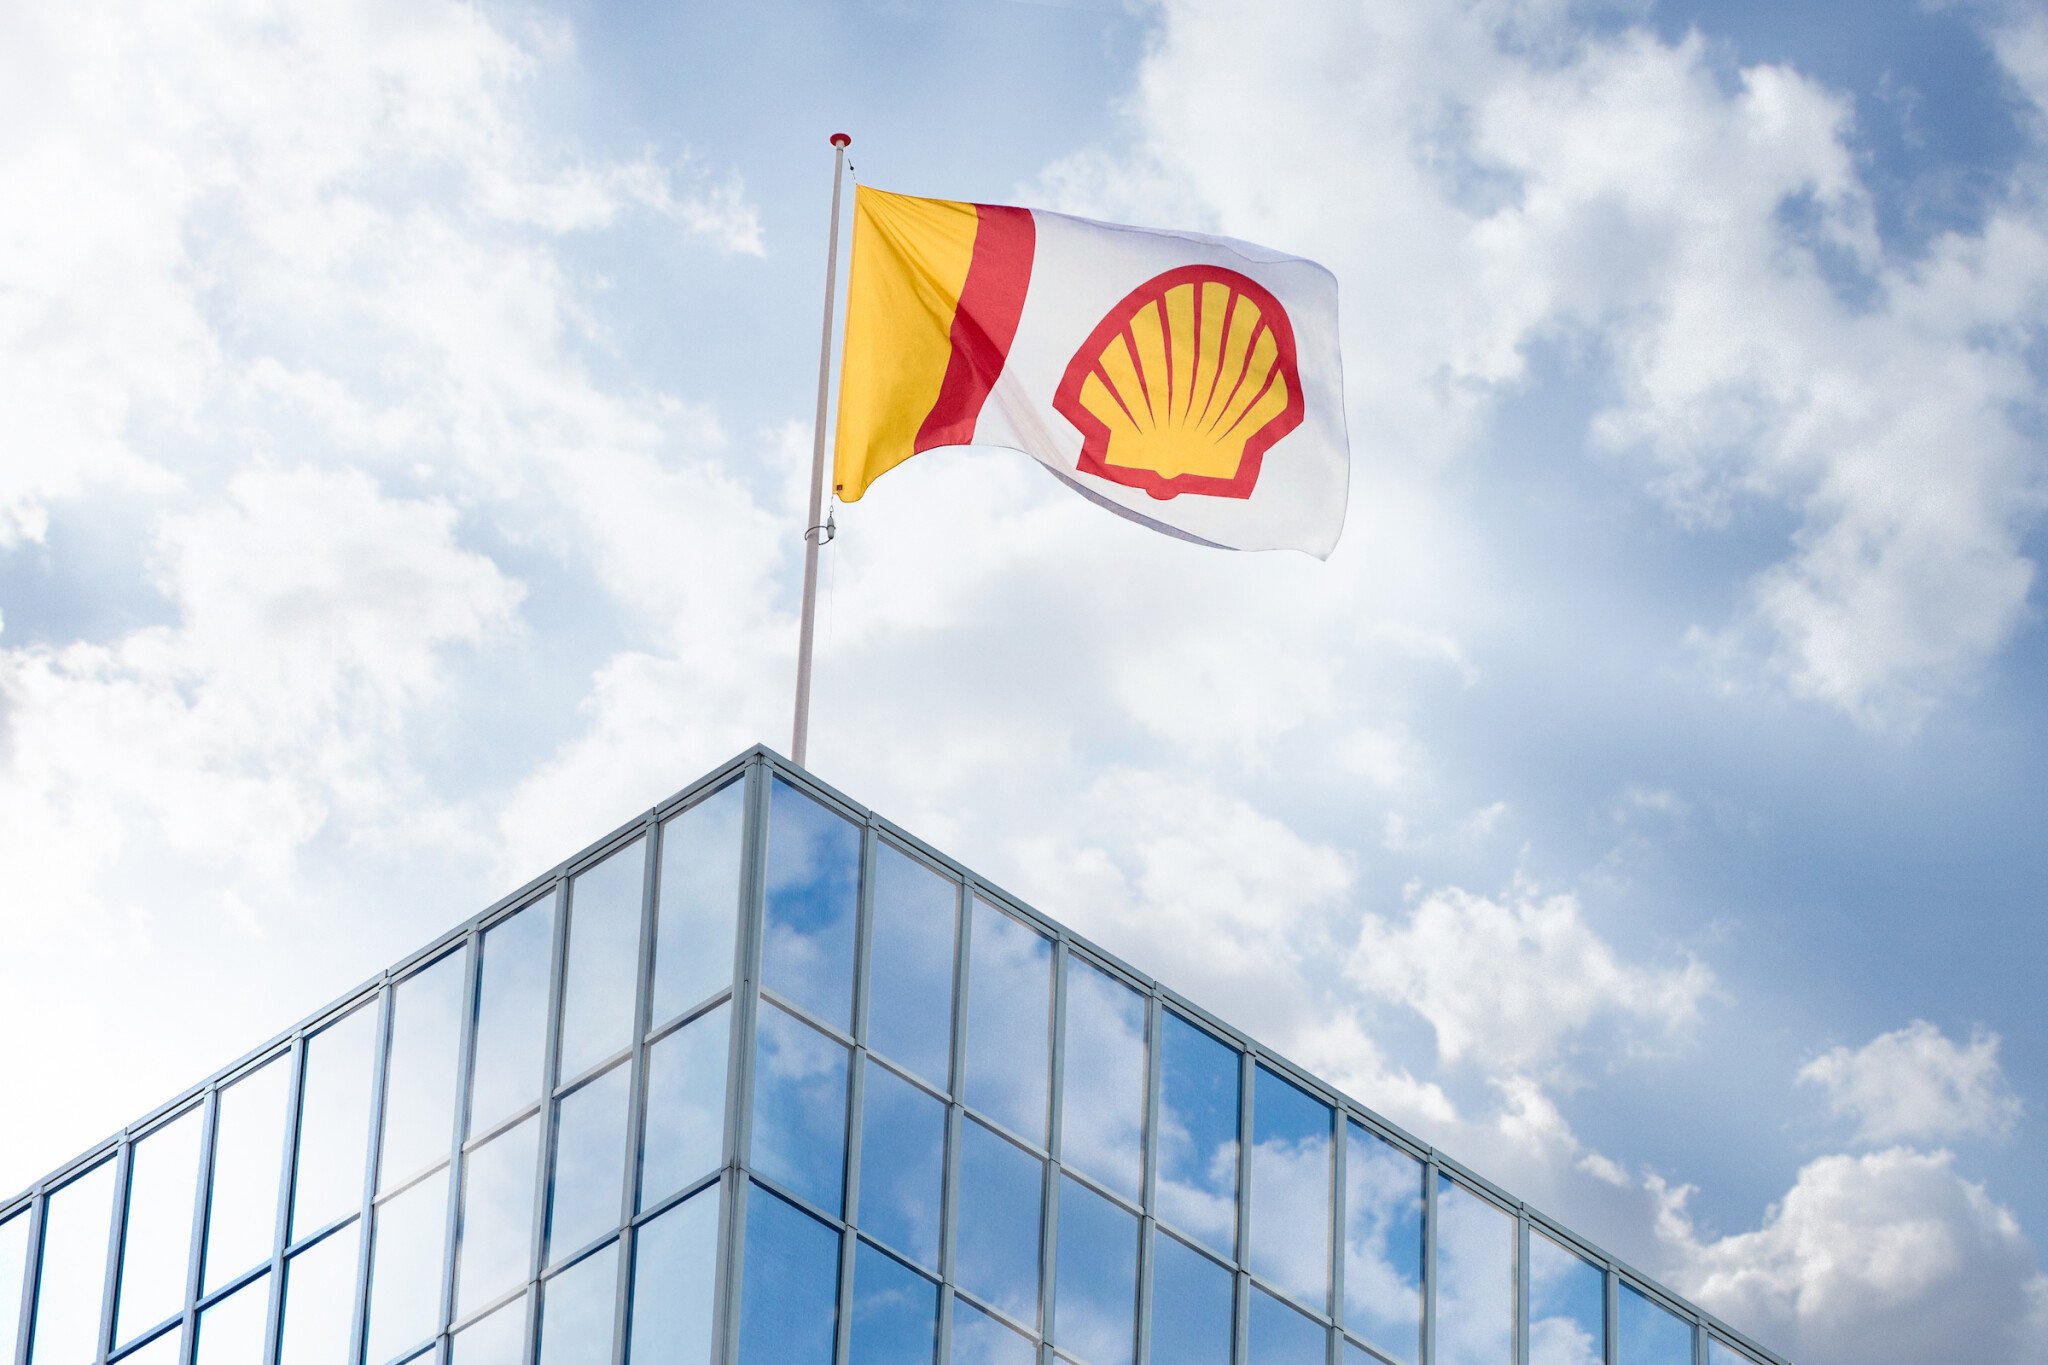 Ropný gigant Shell loni více než zdvojnásobil zisk. Vydělal rekordních 860 miliard korun